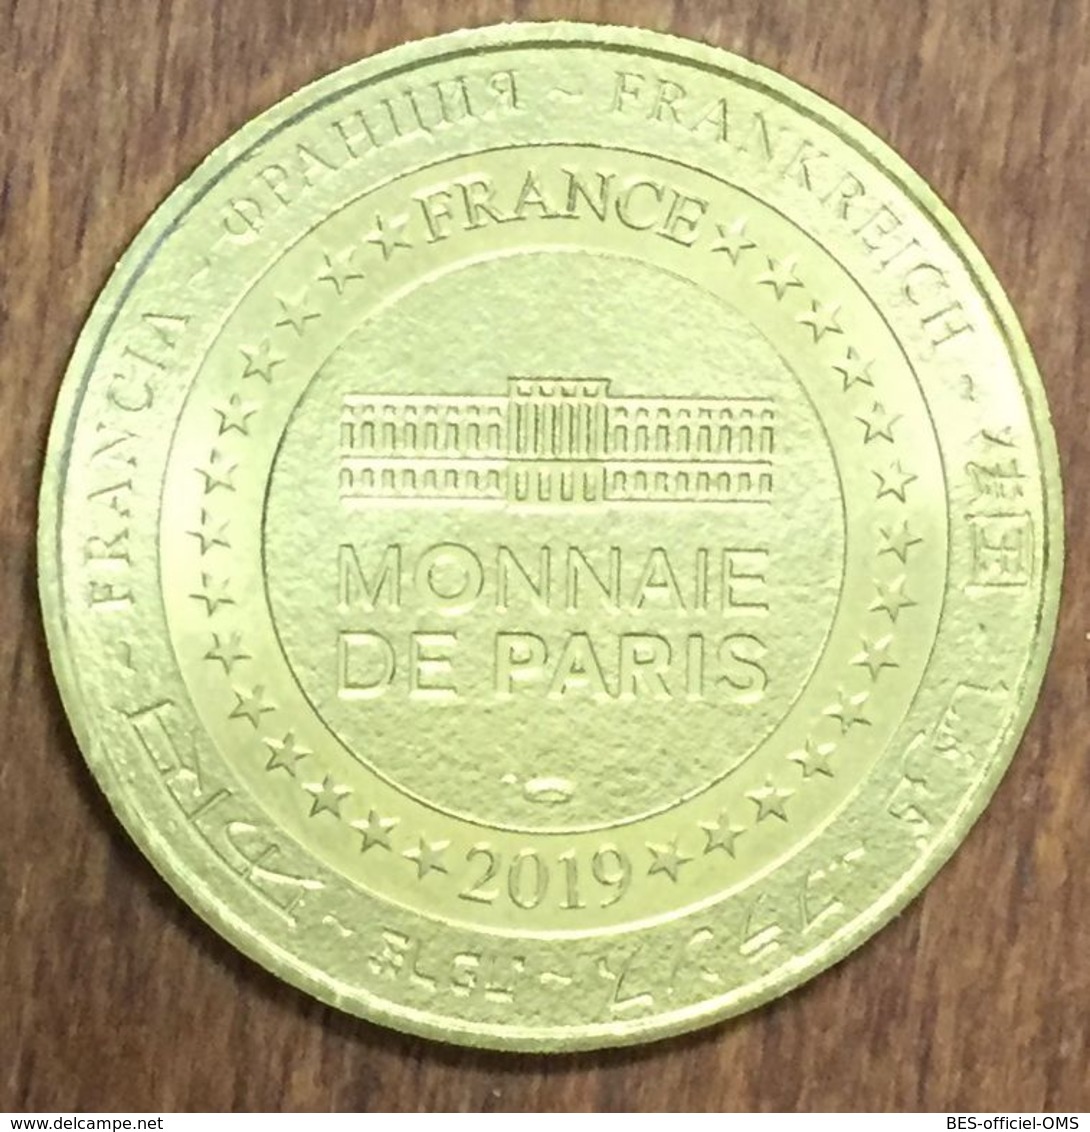 49 NOYANT LA GRAVOYÈRE MINE BLEUEMDP 2019  MÉDAILLE SOUVENIR MONNAIE DE PARIS JETON TOURISTIQUE TOKENS MEDALS COINS - 2019